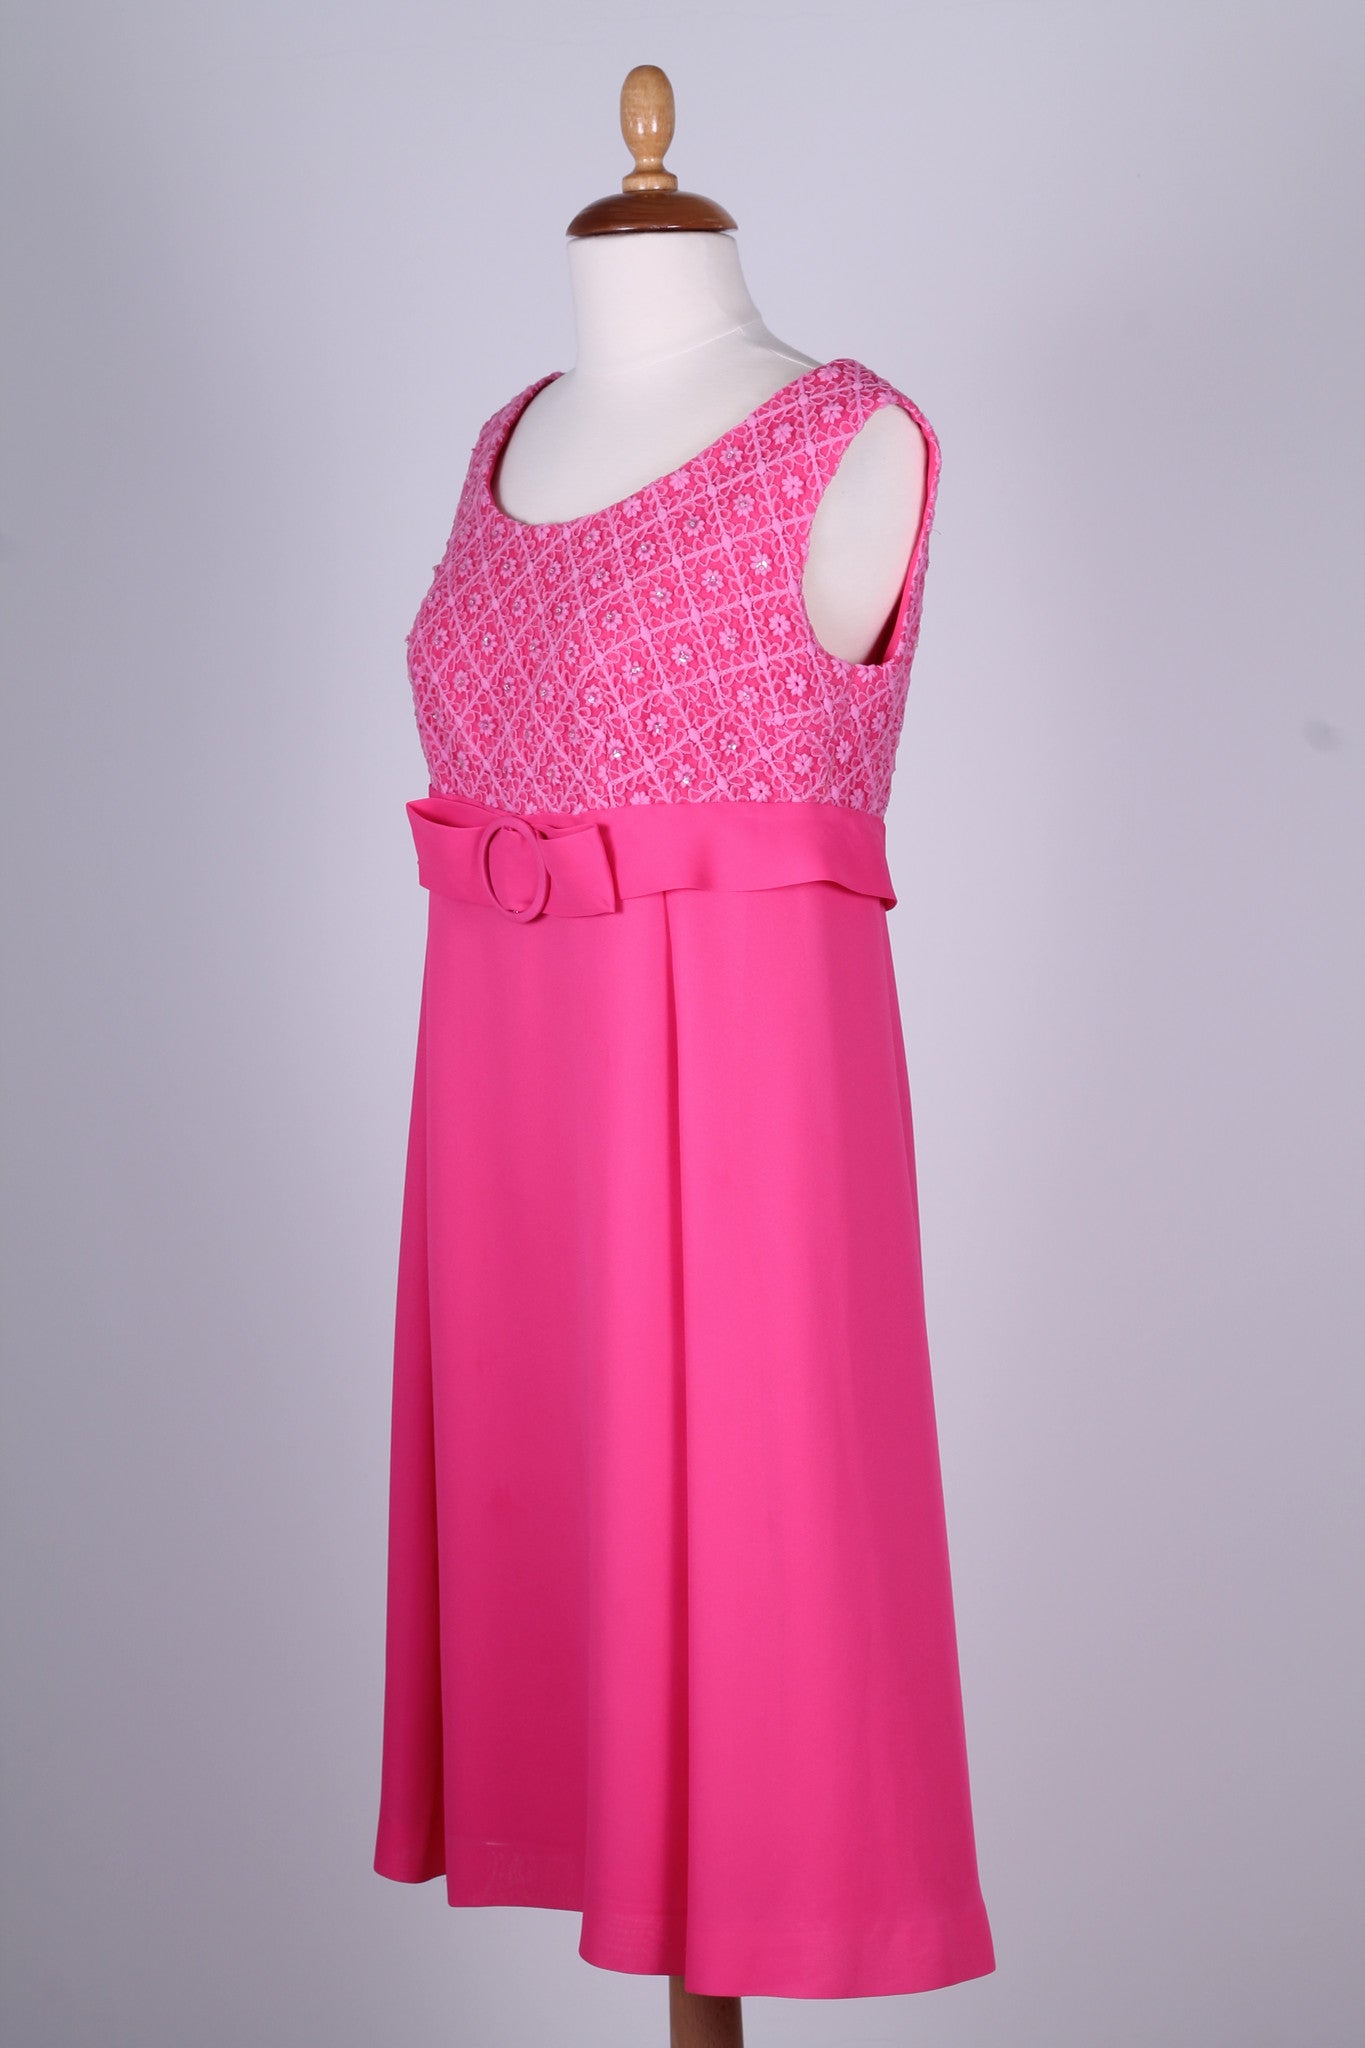 Solgt vintage tøj - Pink cocktailkjole 1960. S-M - Solgt - Vintage Divine - 5